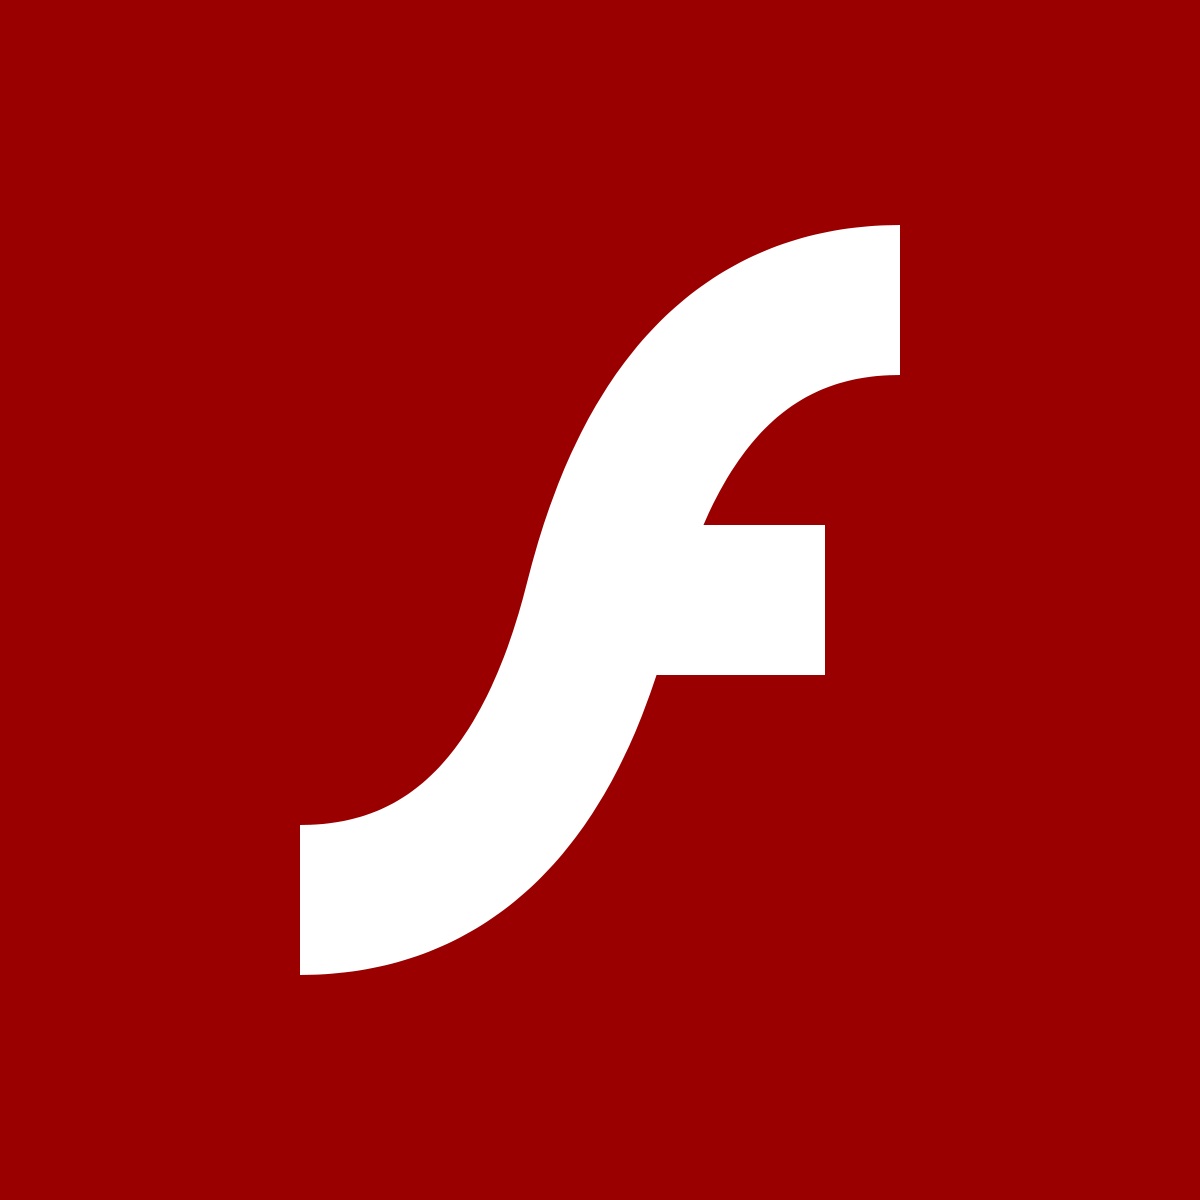 微软 Win10 21H1 成首个不附带 Flash Player 的系统版本